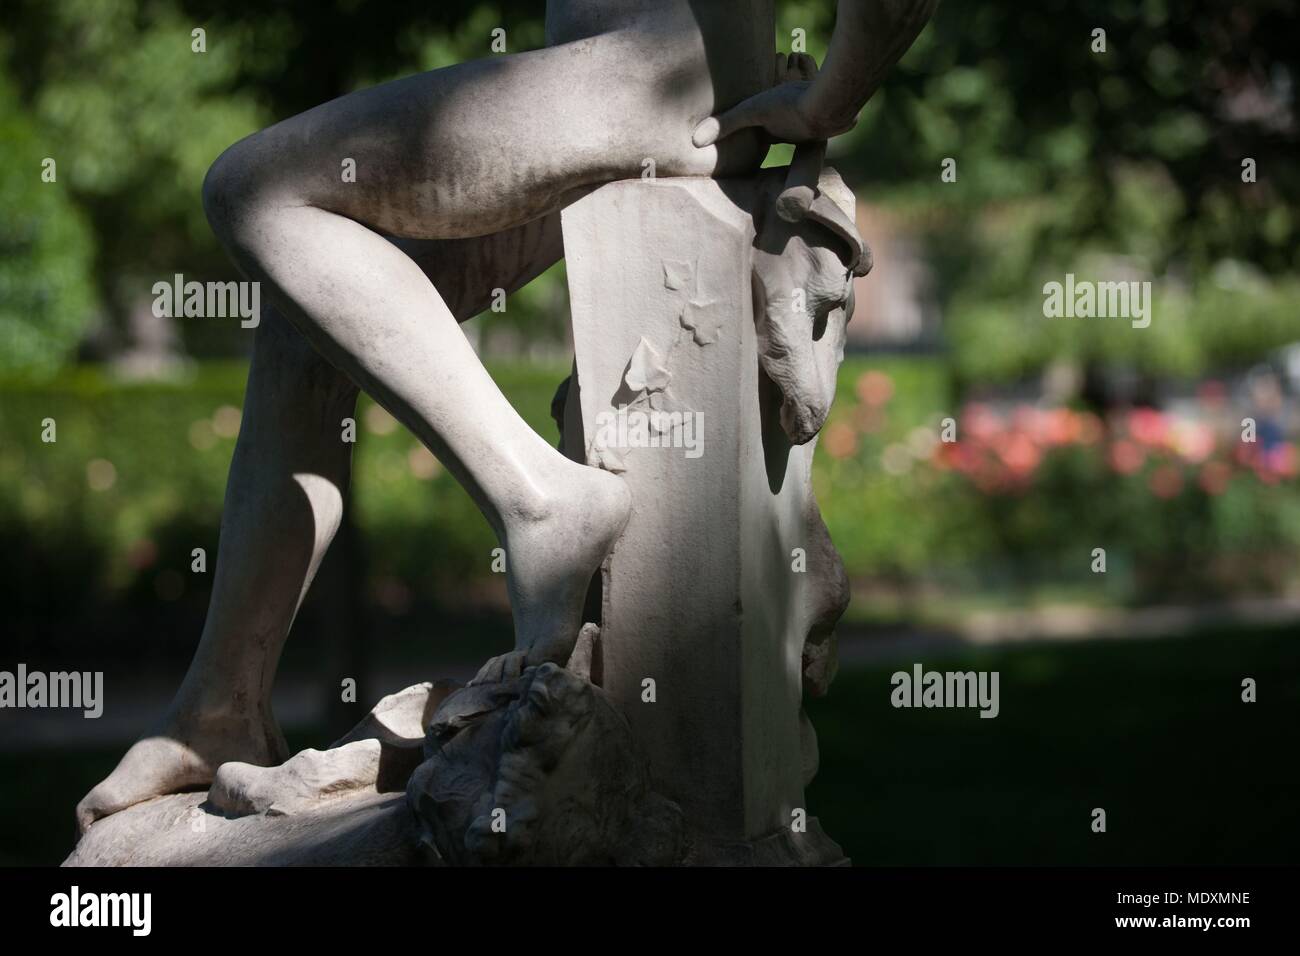 Paris, Parc Monceau, detail of a sculpture, ephebe and pigeons, Stock Photo